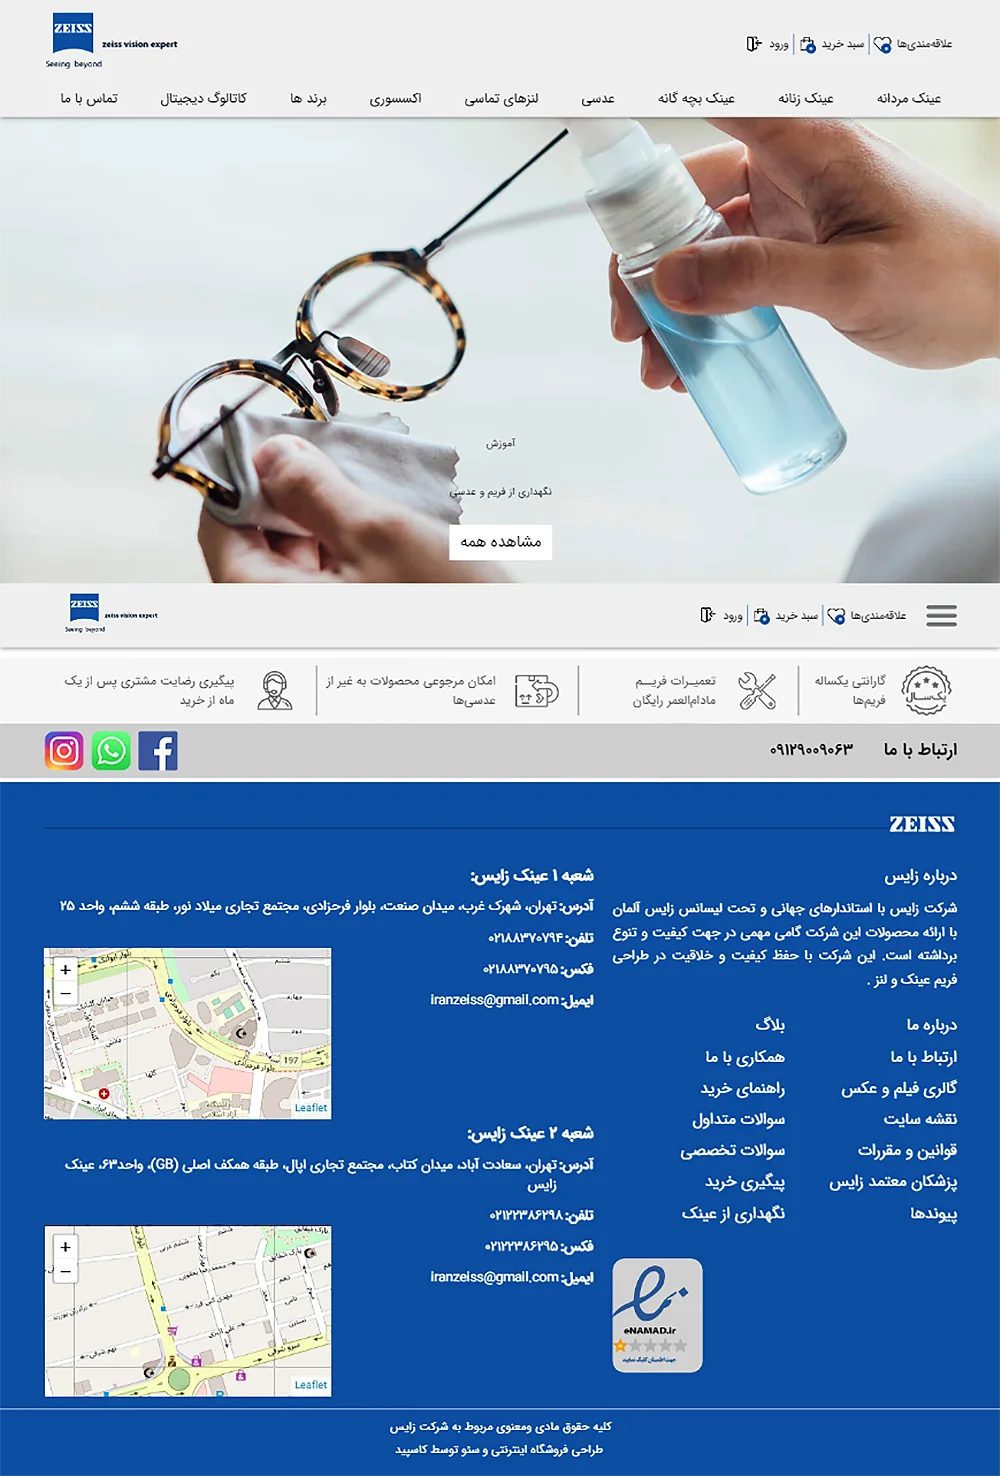 نمونه کار طراحی و سئو فروشگاه اینترنتی عینک زایس